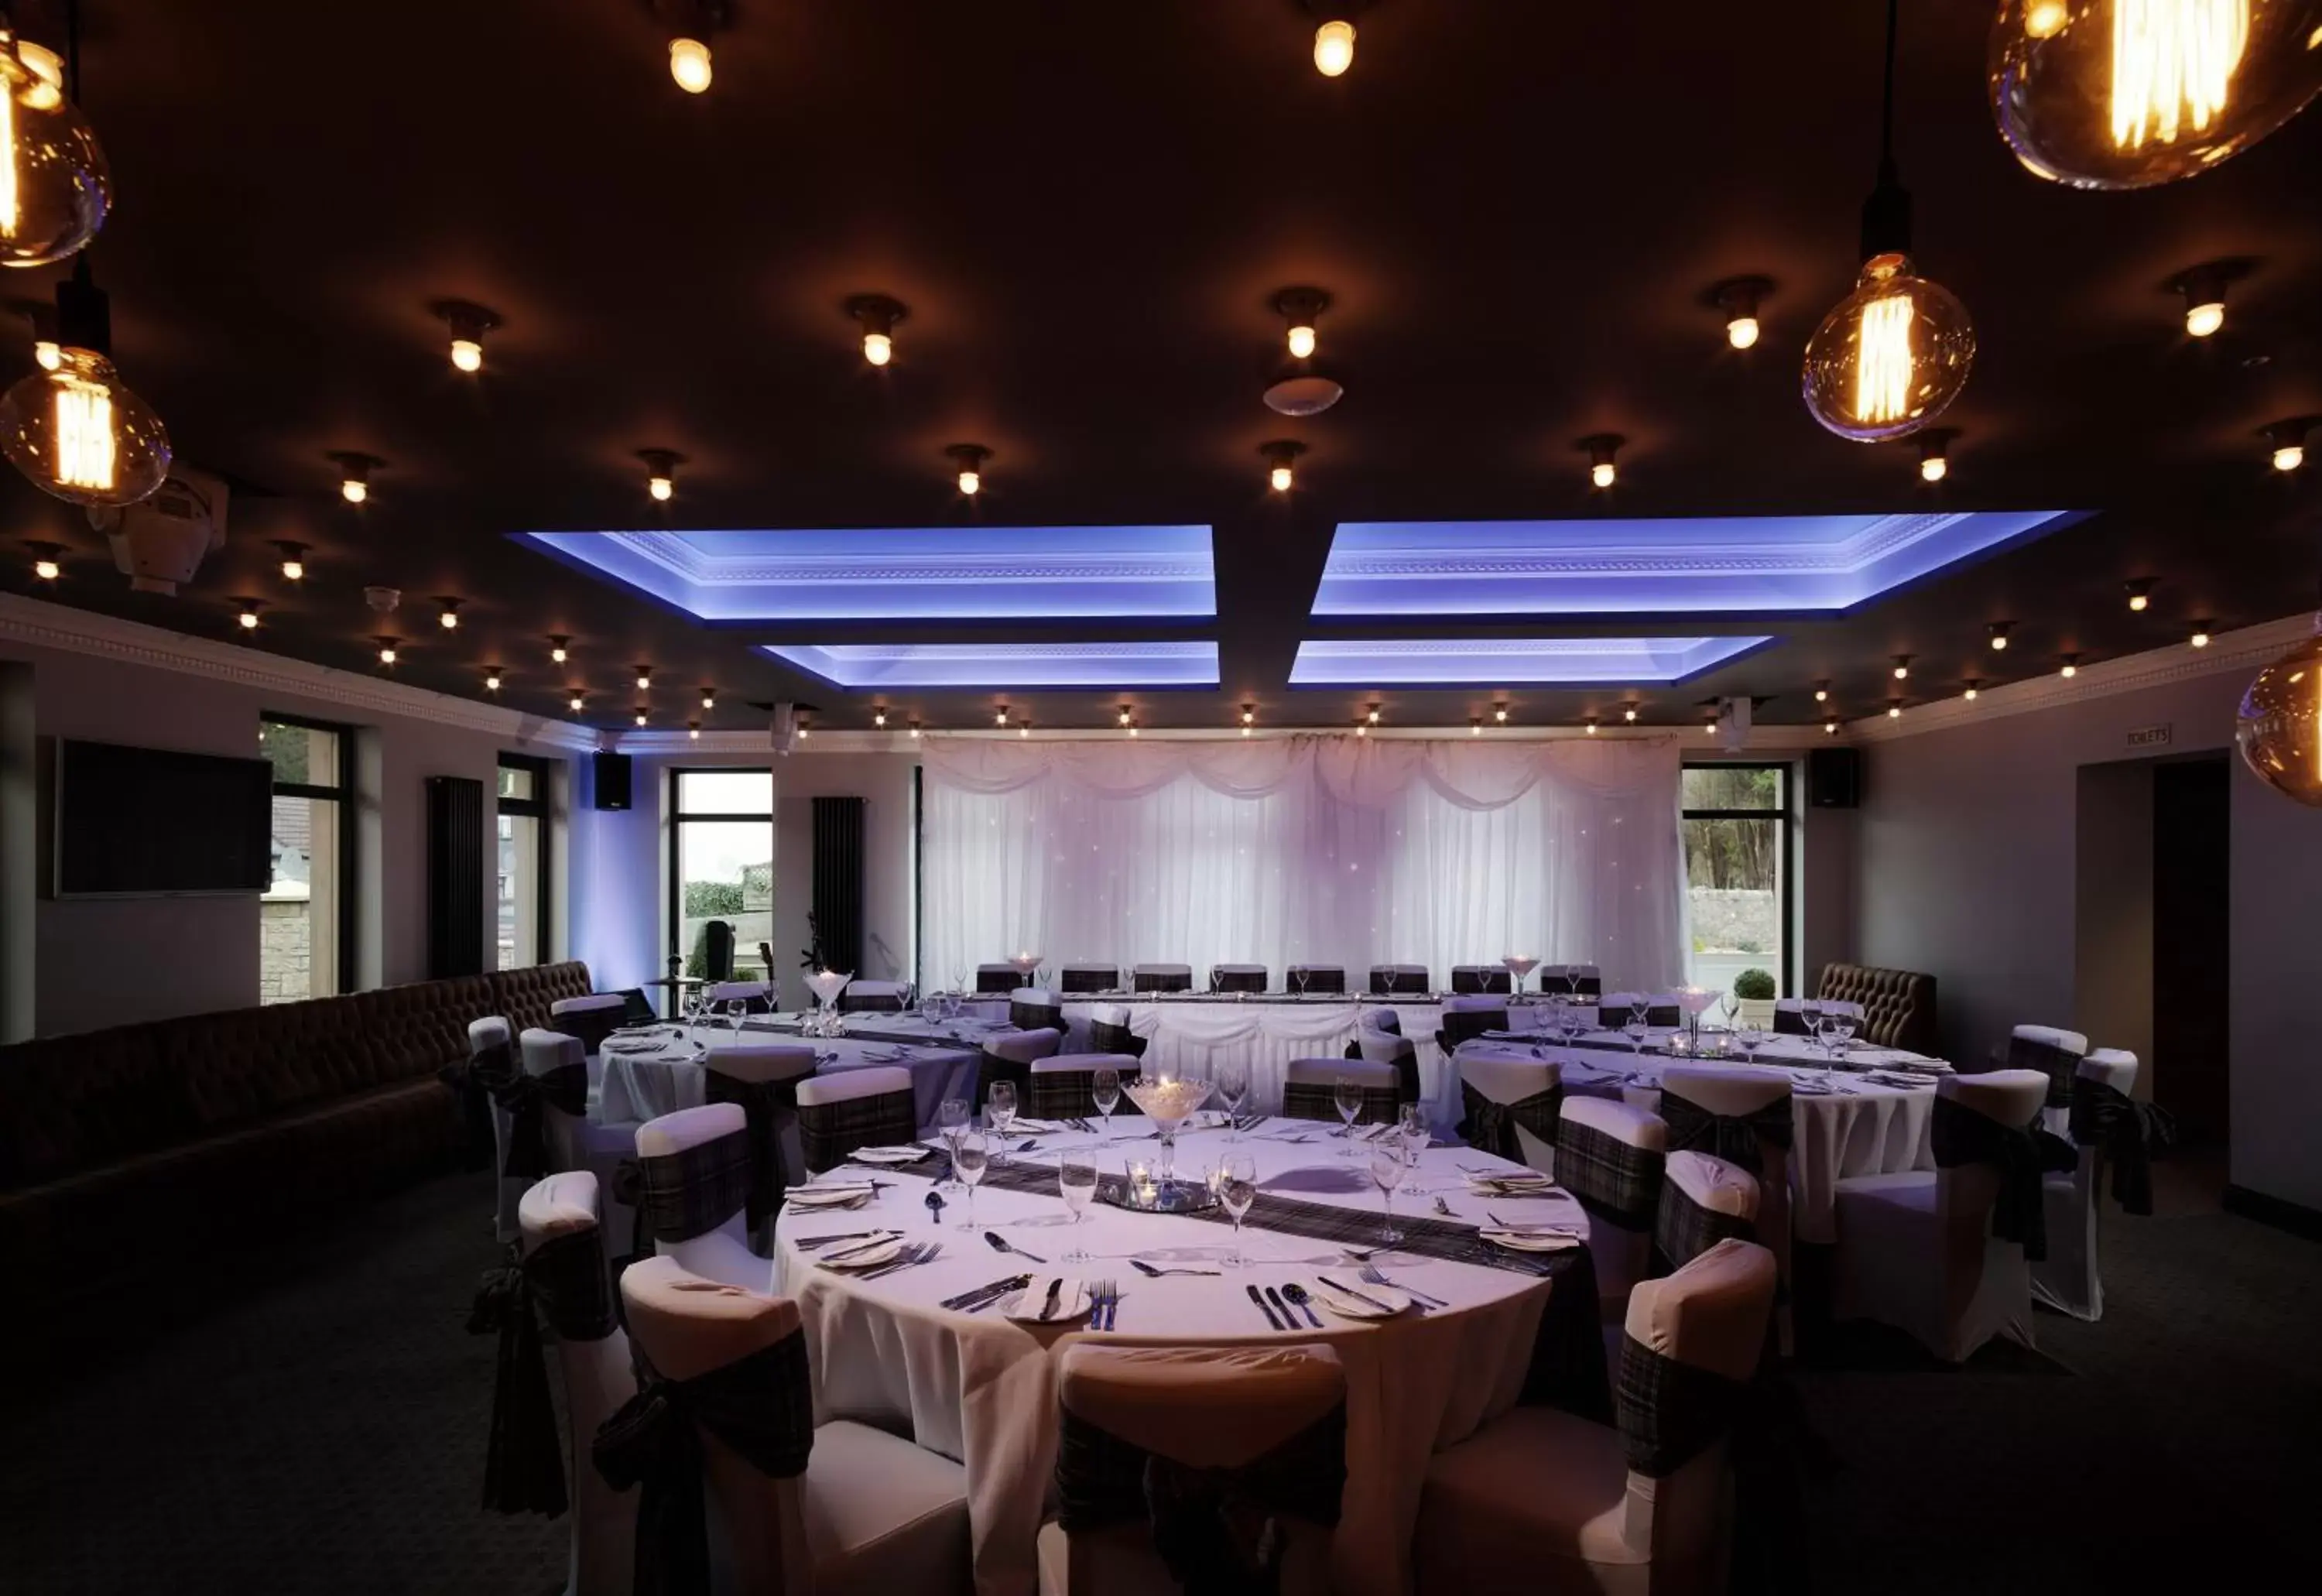 Banquet/Function facilities, Banquet Facilities in Adamson Hotel